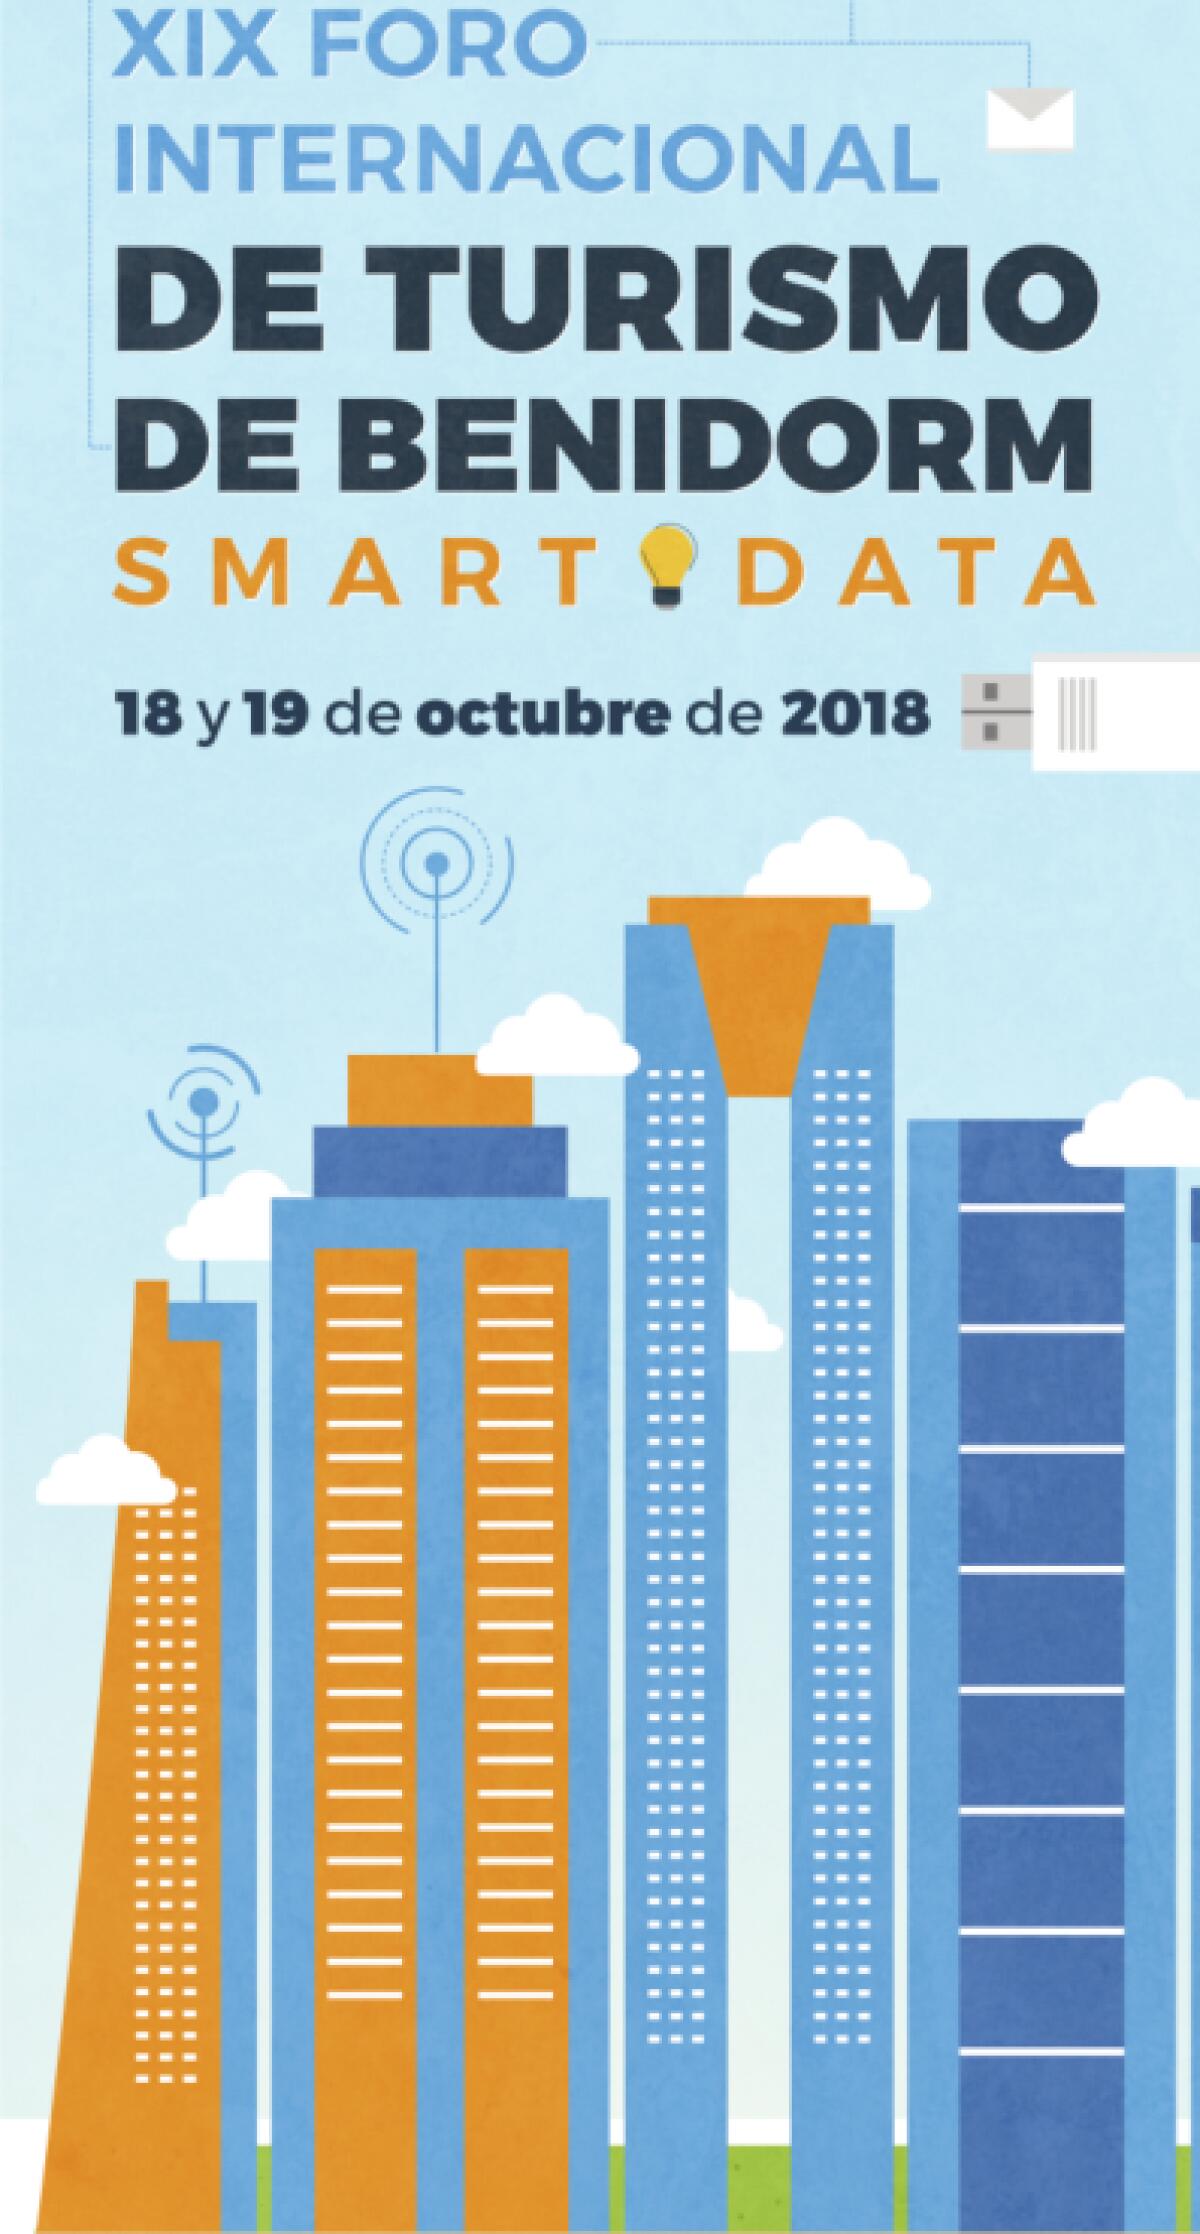 Mañana arranca el XIX Foro Internacional de Turismo, que en su primera jornada abordará la gestión del ‘smart data’